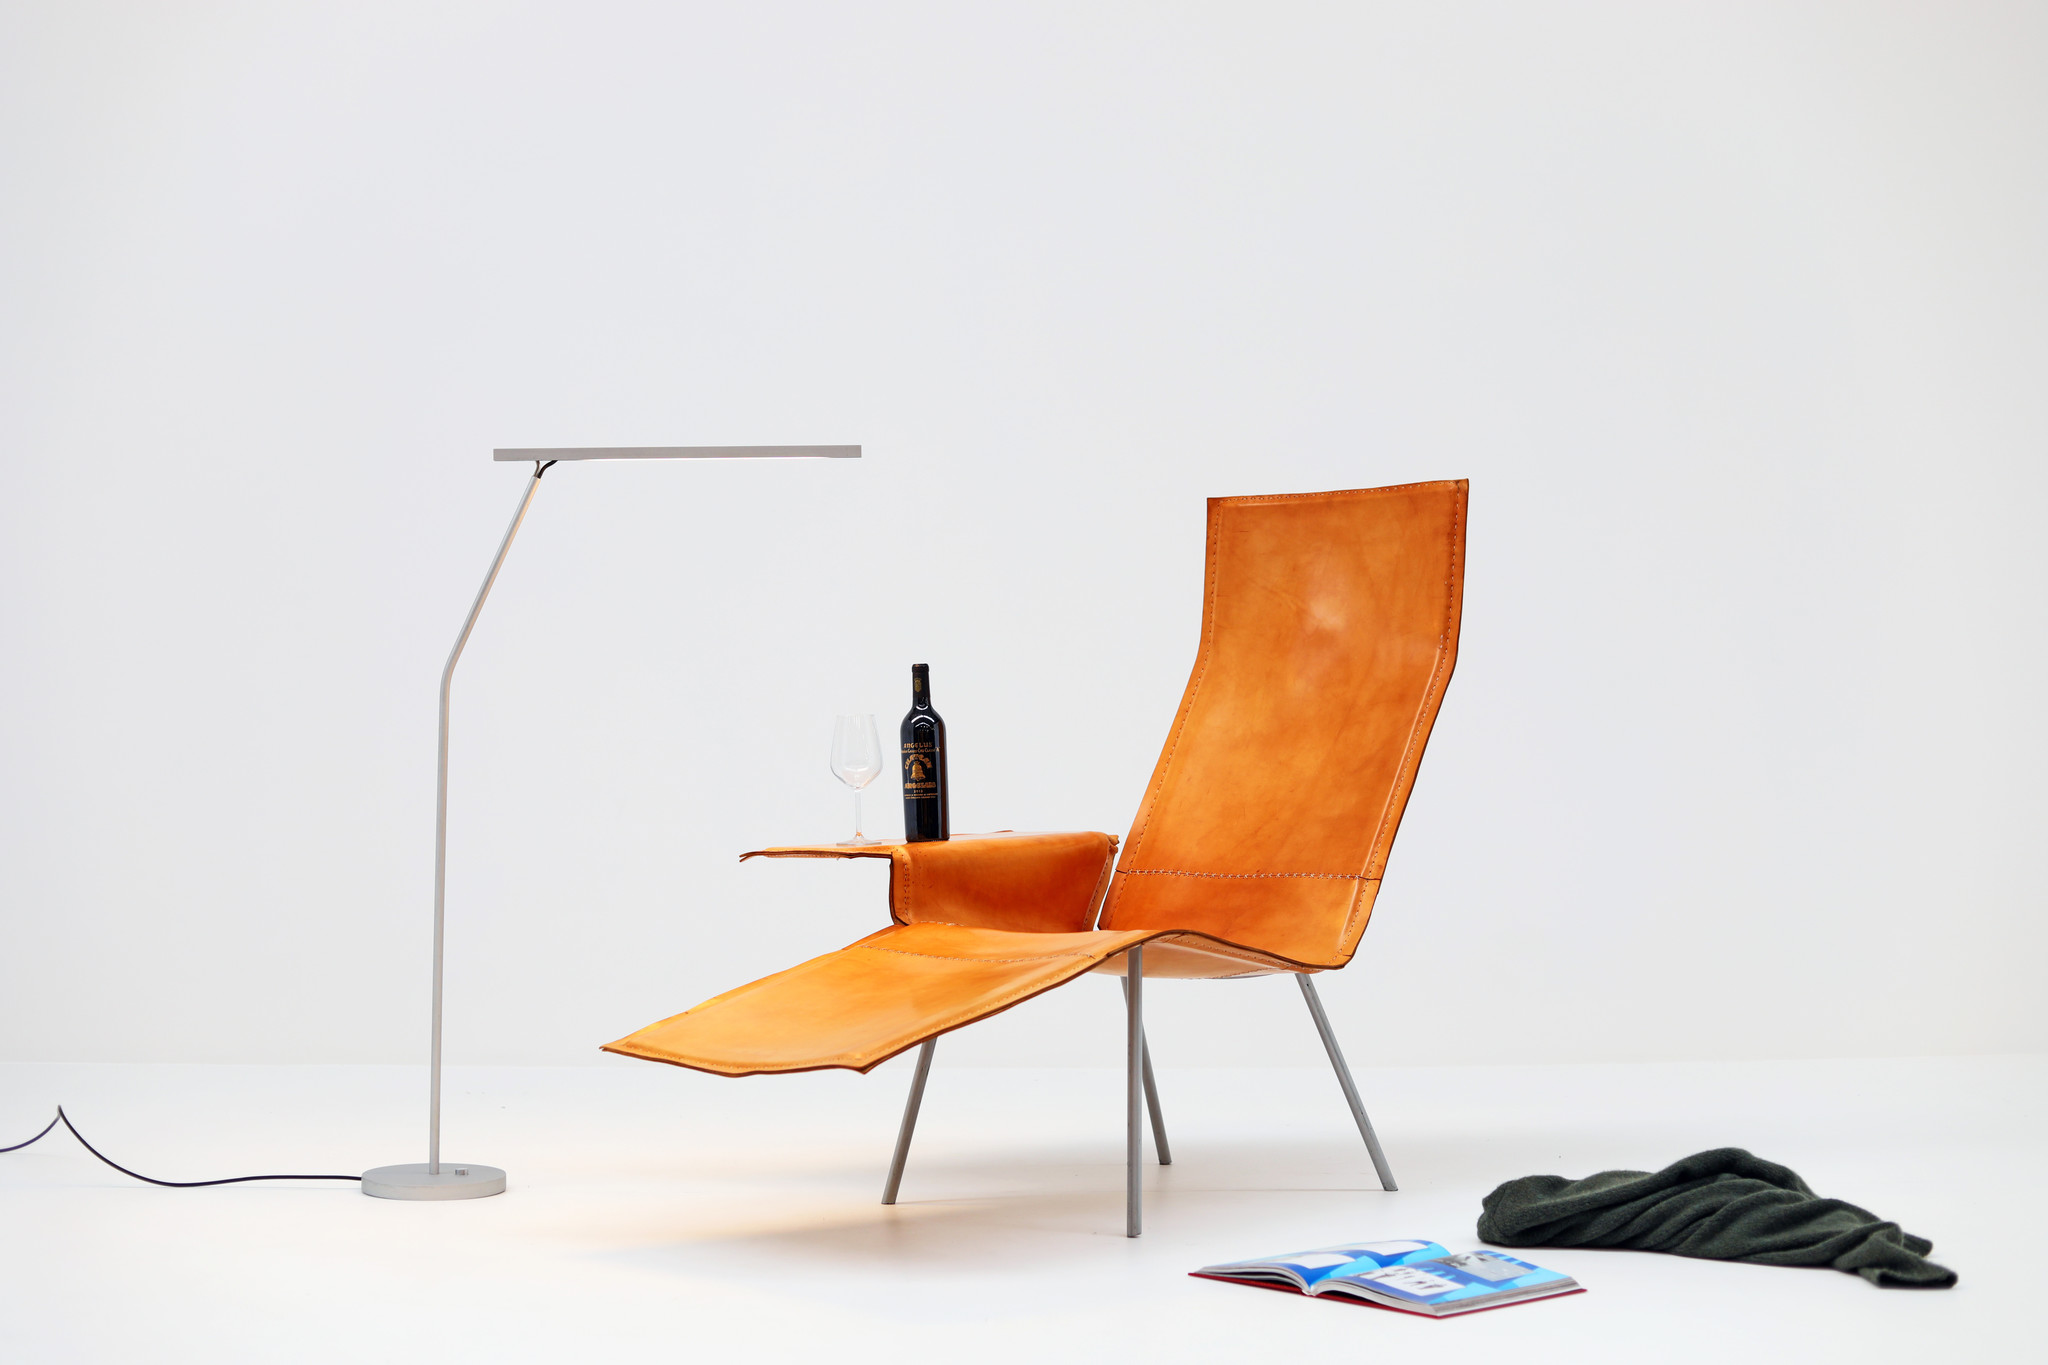 Prototype Maarten Van Severen Lounge chair par Pastoe, 2004